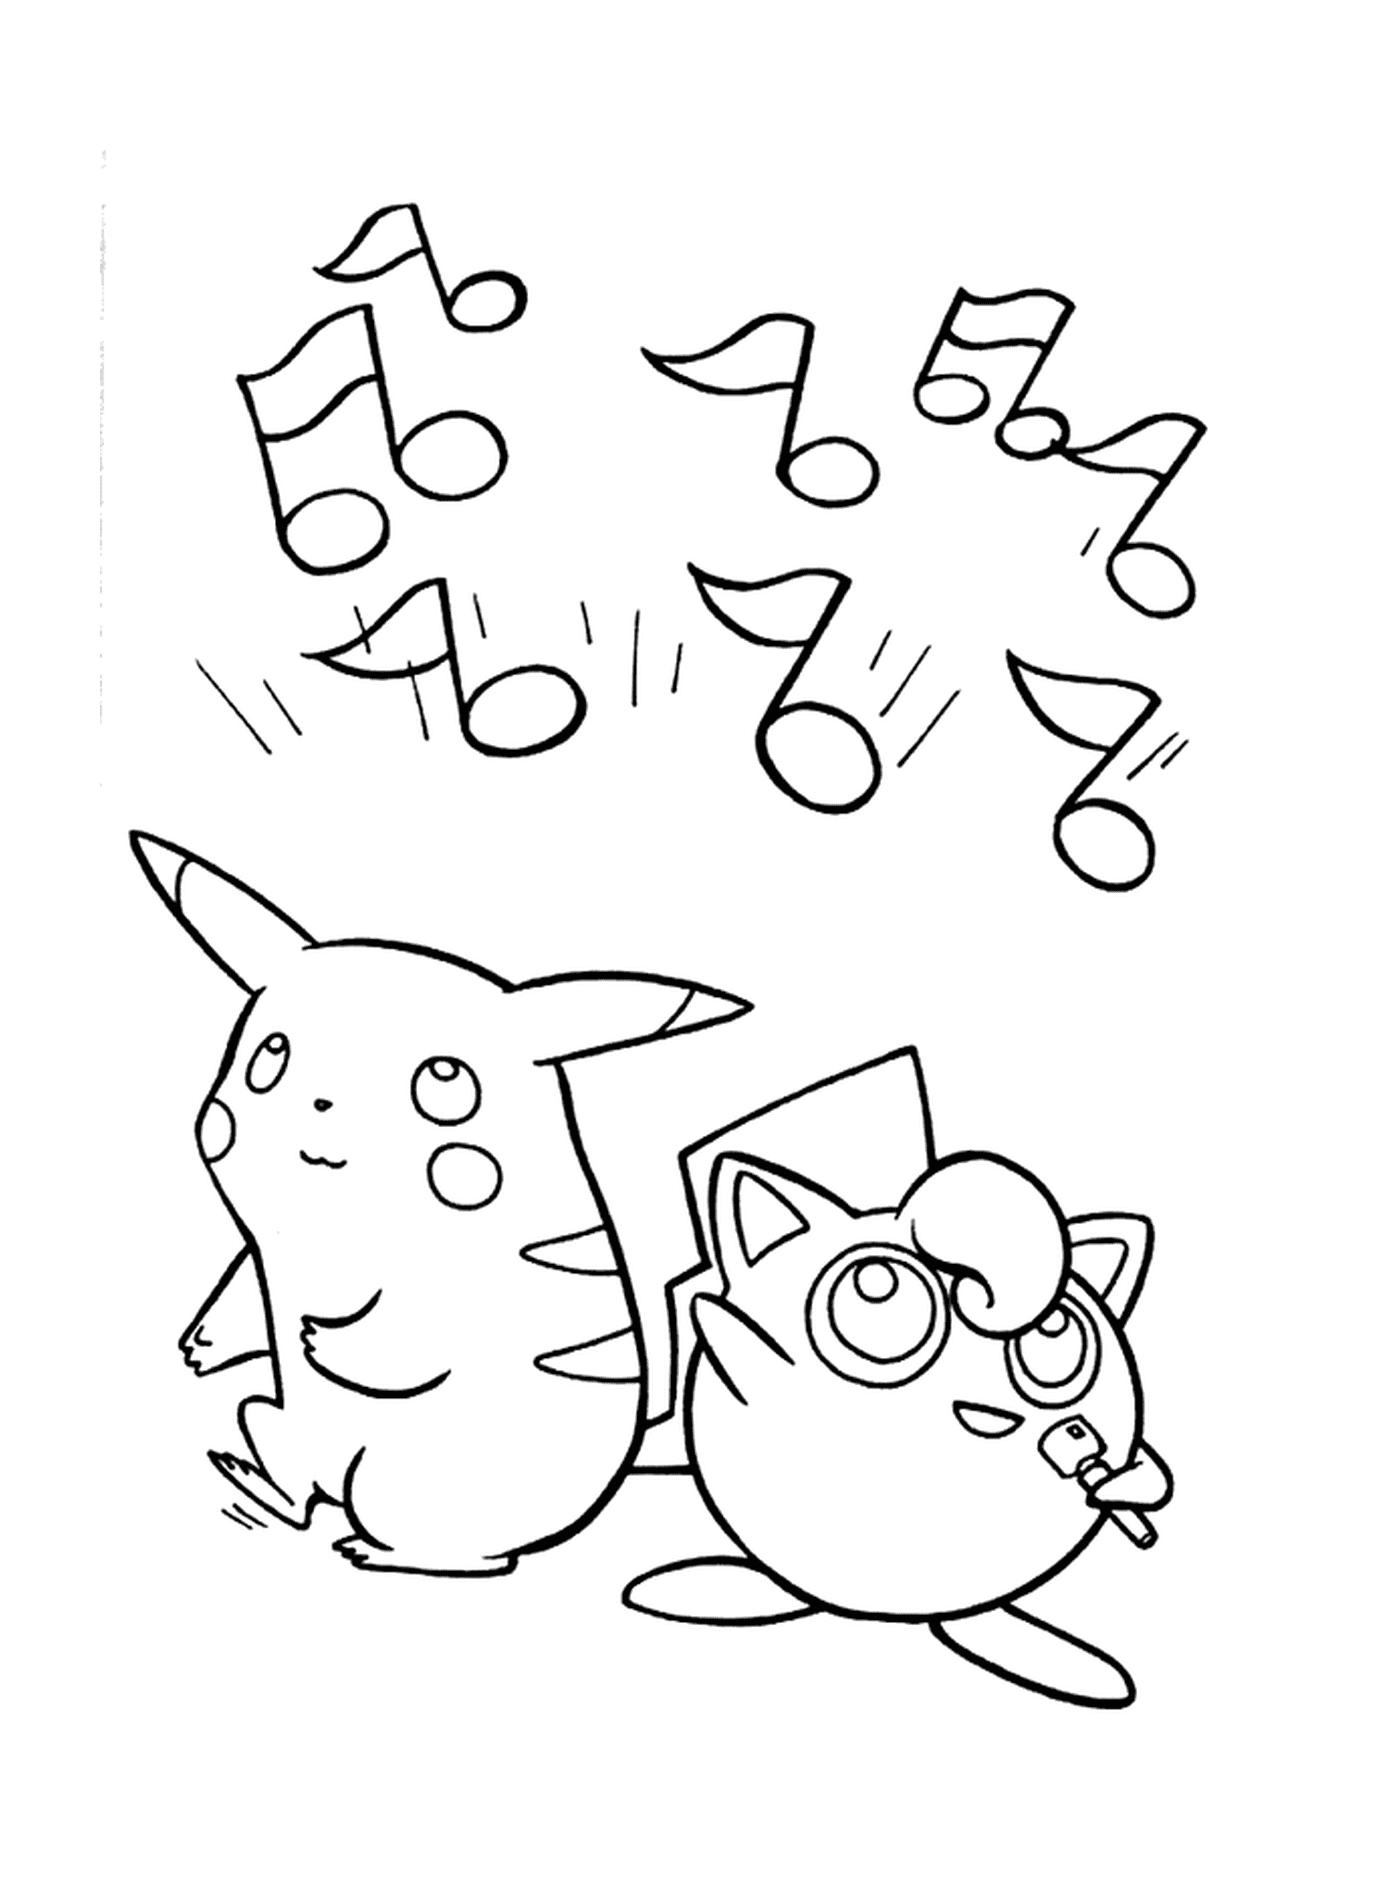  Pikachu和Jiggglypuff, 一个有趣的会议 